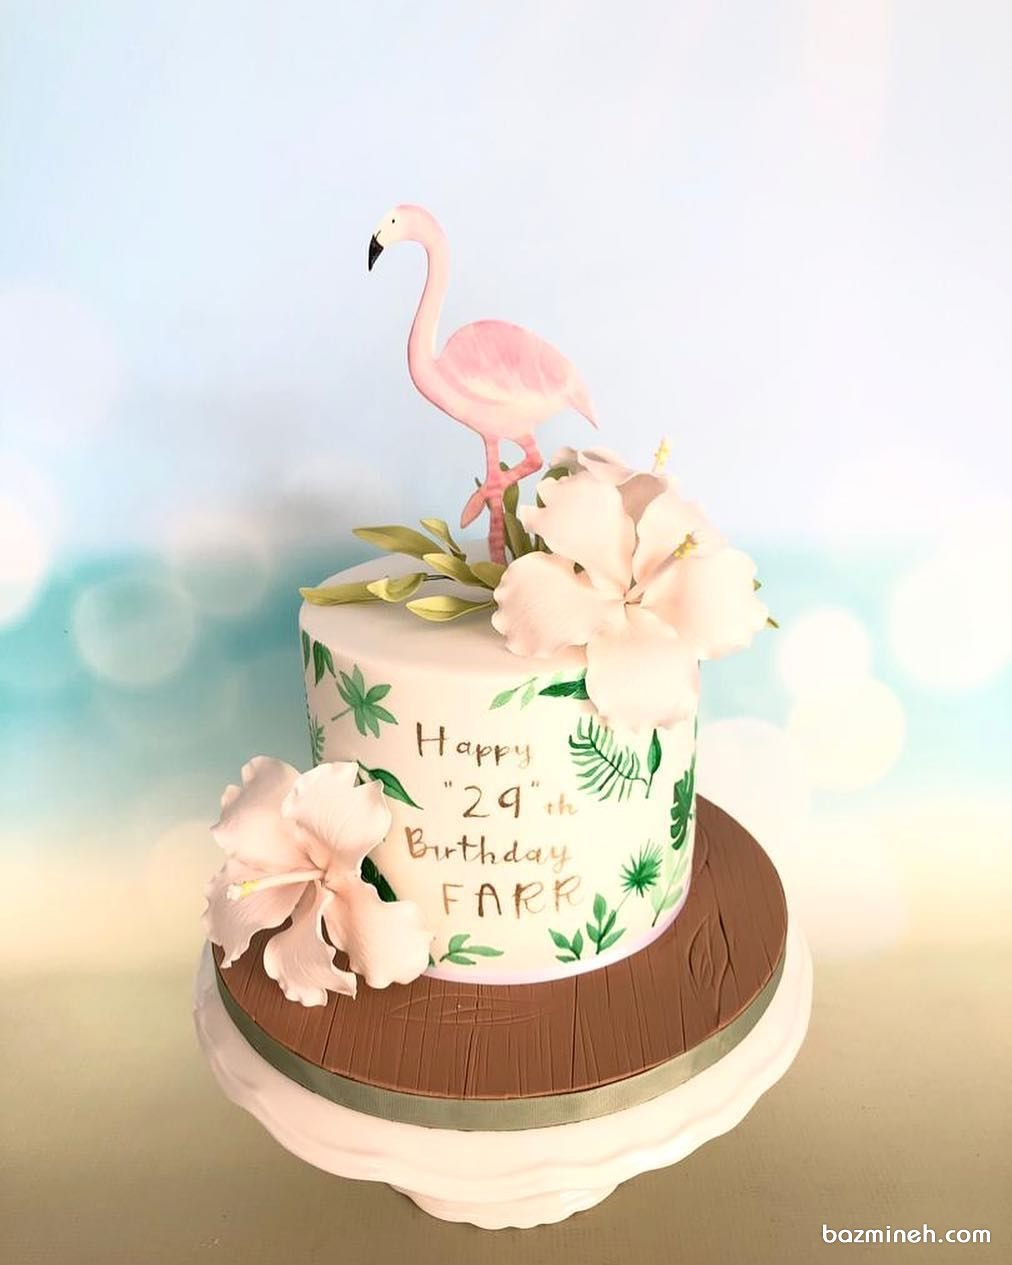 مینی کیک رویایی جشن تولد بزرگسال با تم فلامینگو